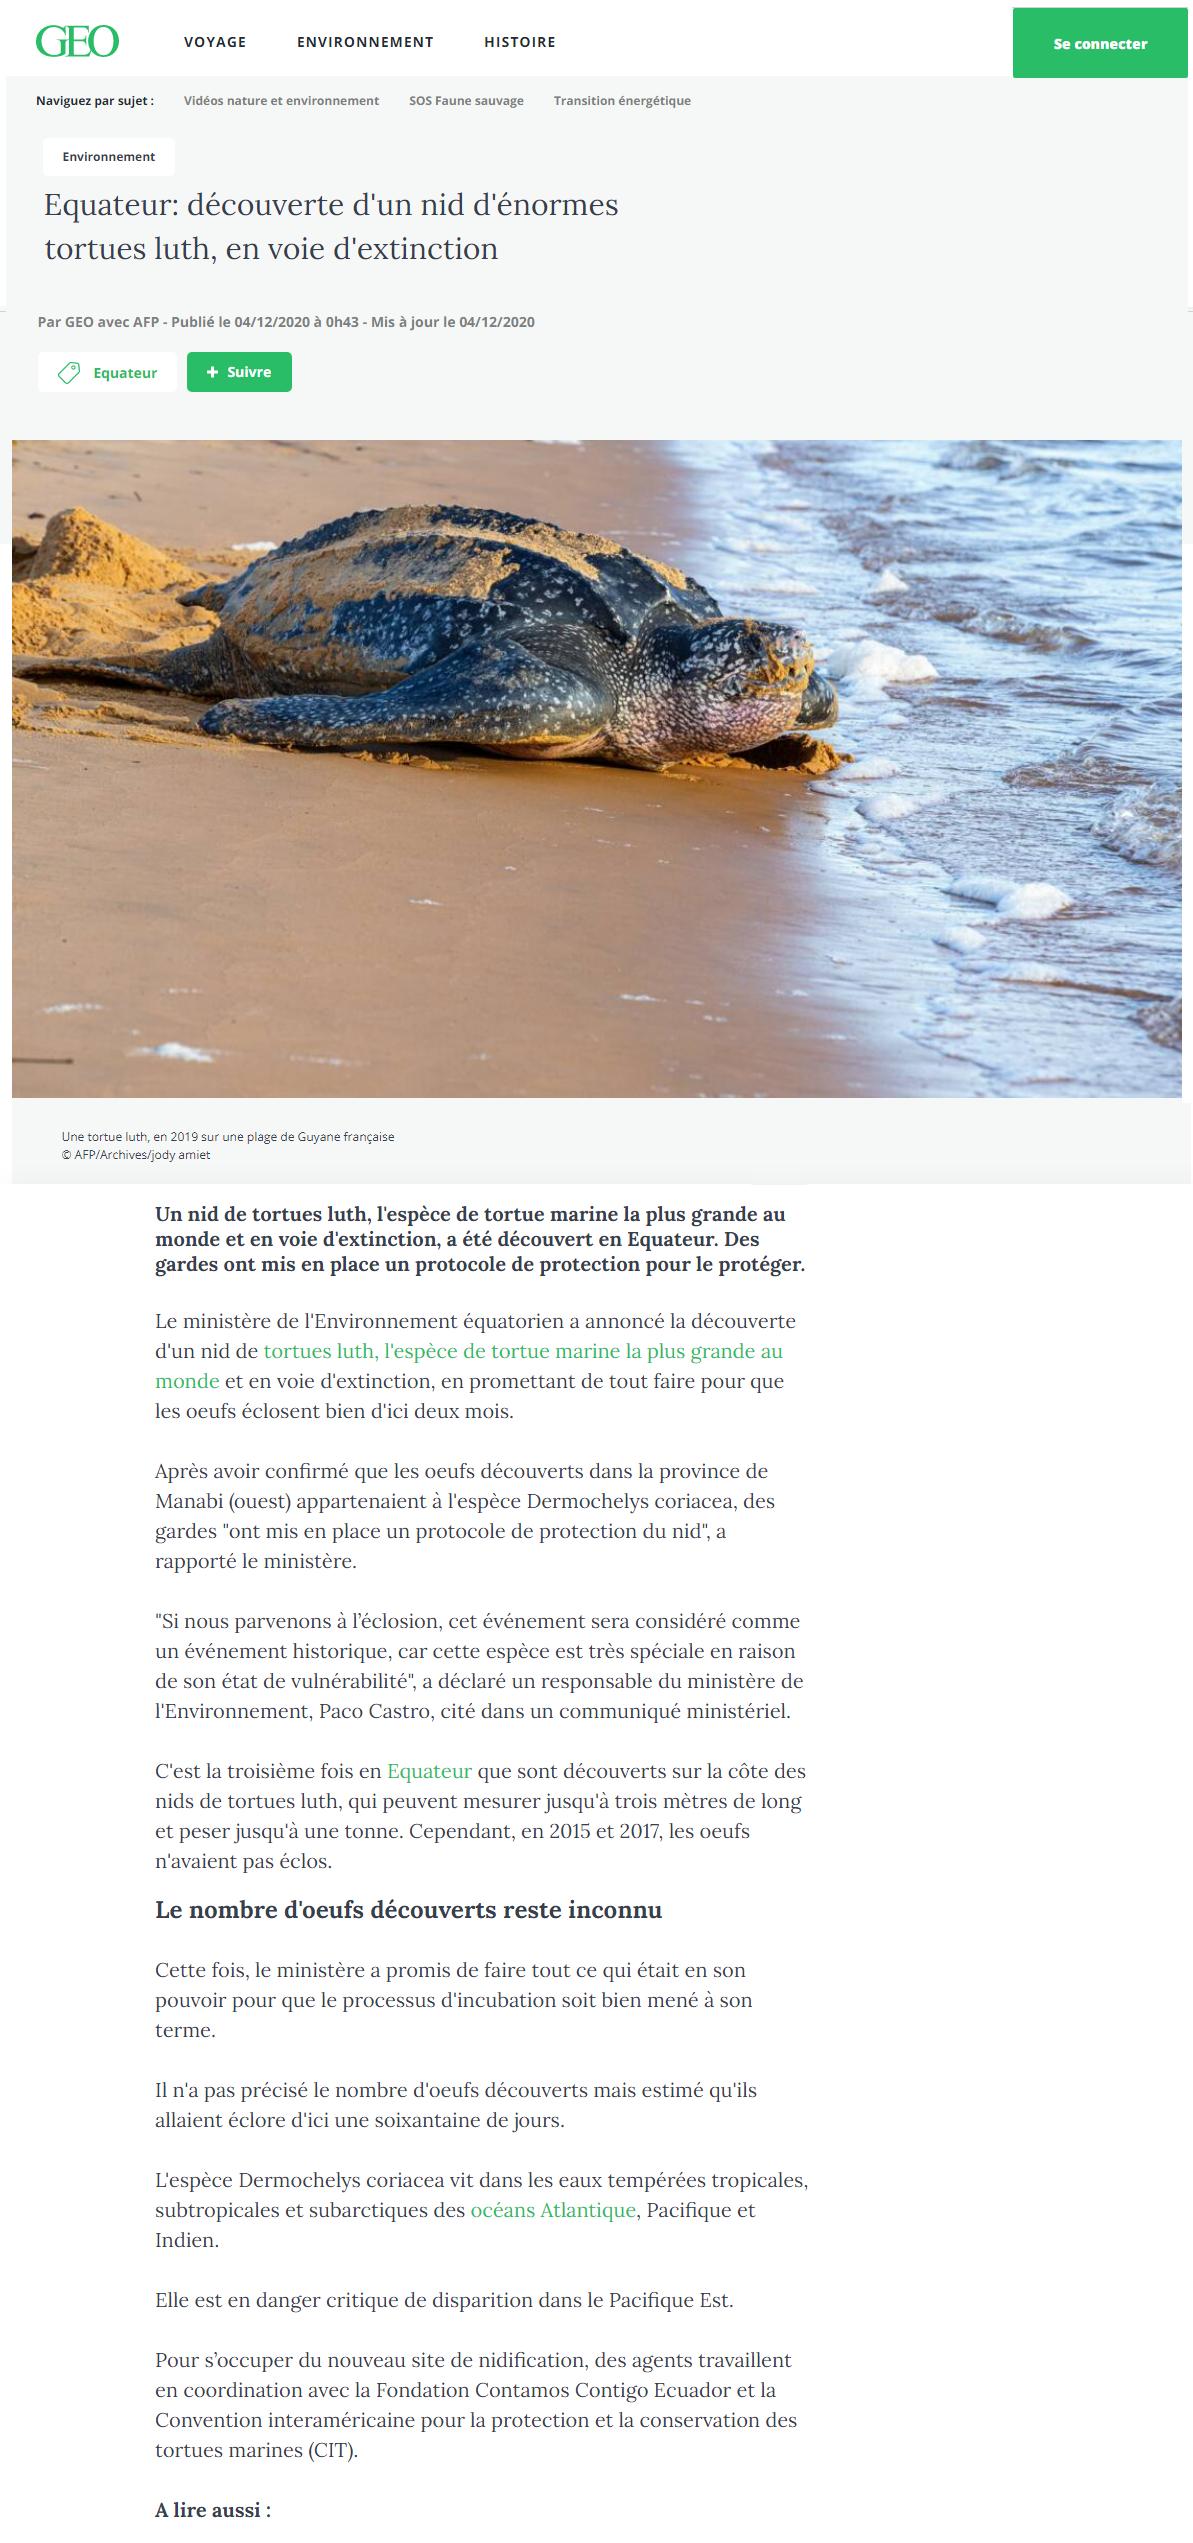 Article "découverte d'un nid de tortues luth en Equateur".